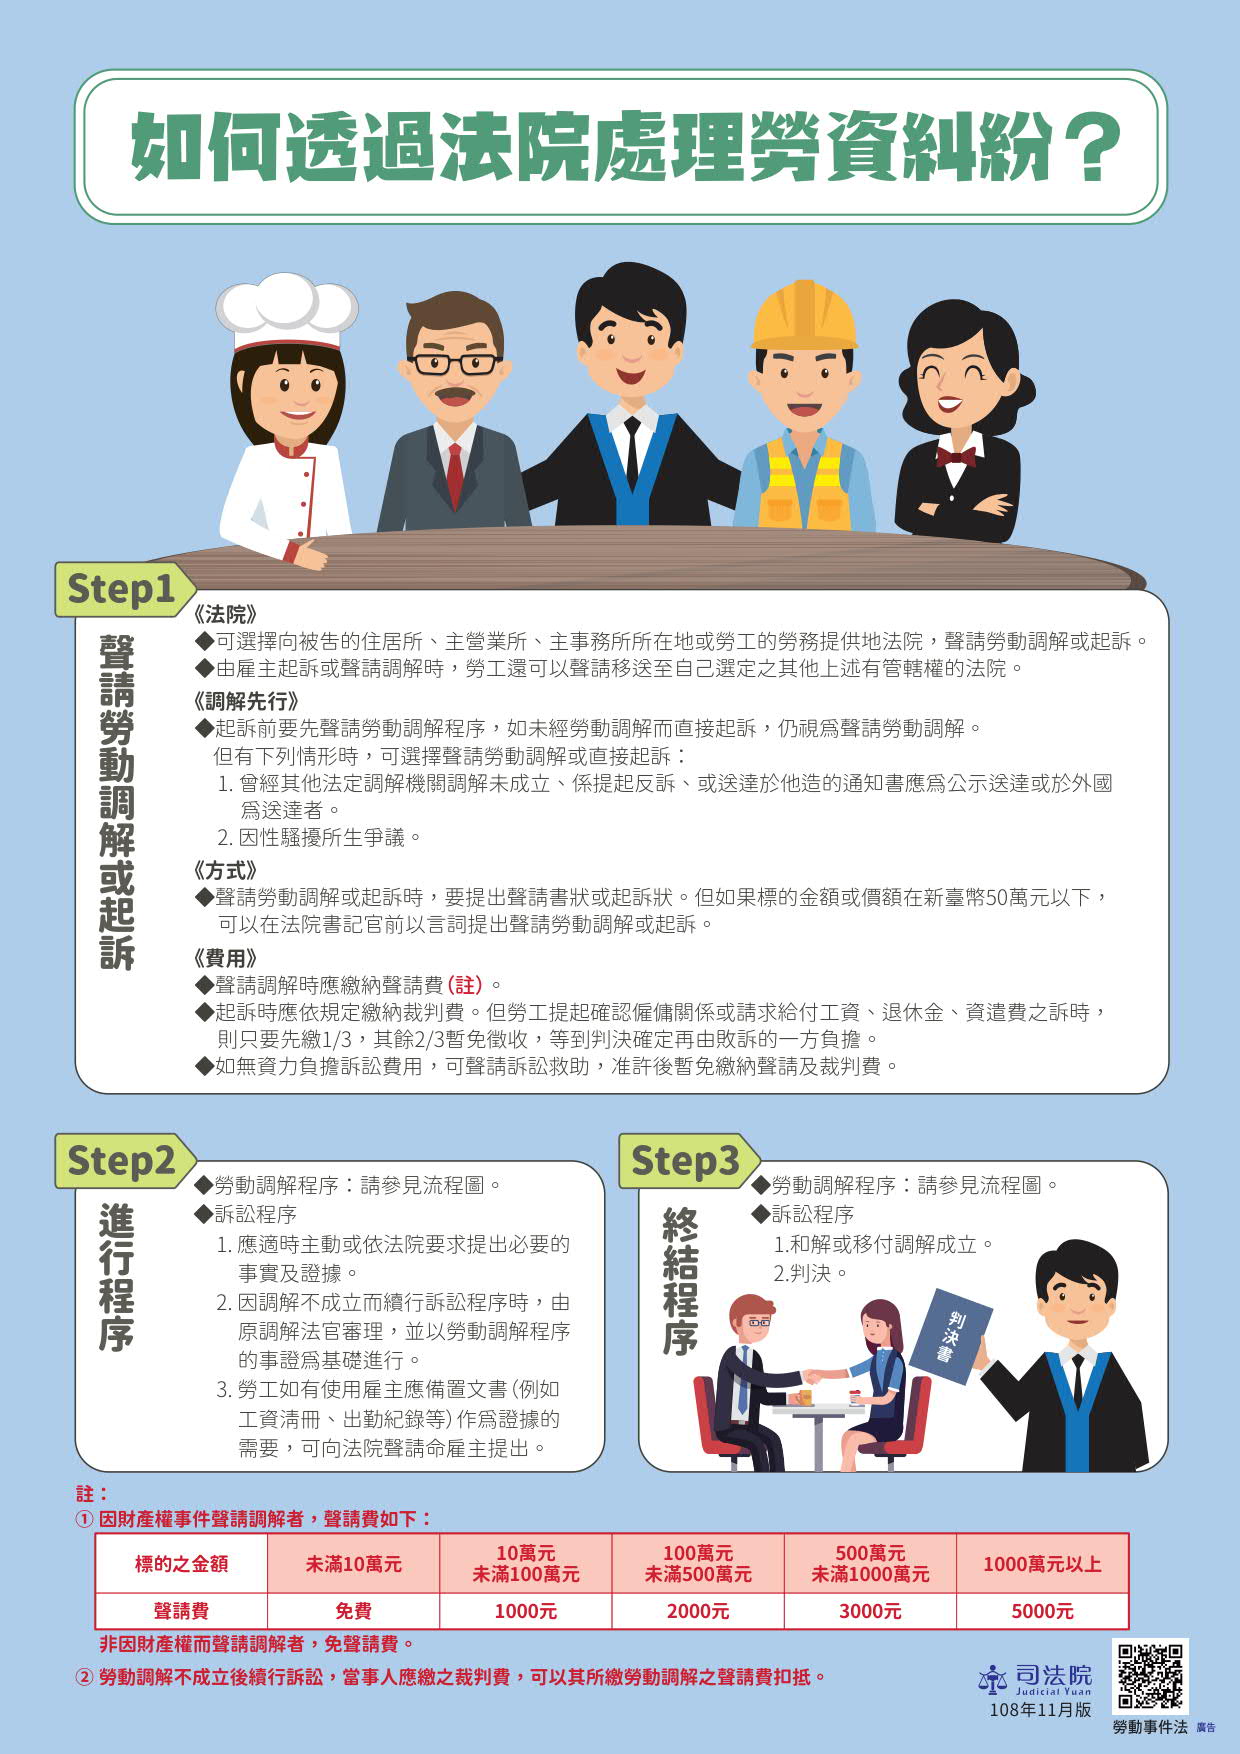 Yudisial Yuan membuat "Brosur Hukum Insiden Ketenagakerjaan" dalam 5 bahasa. Sumber: Diambil dari Yudisial Yuan